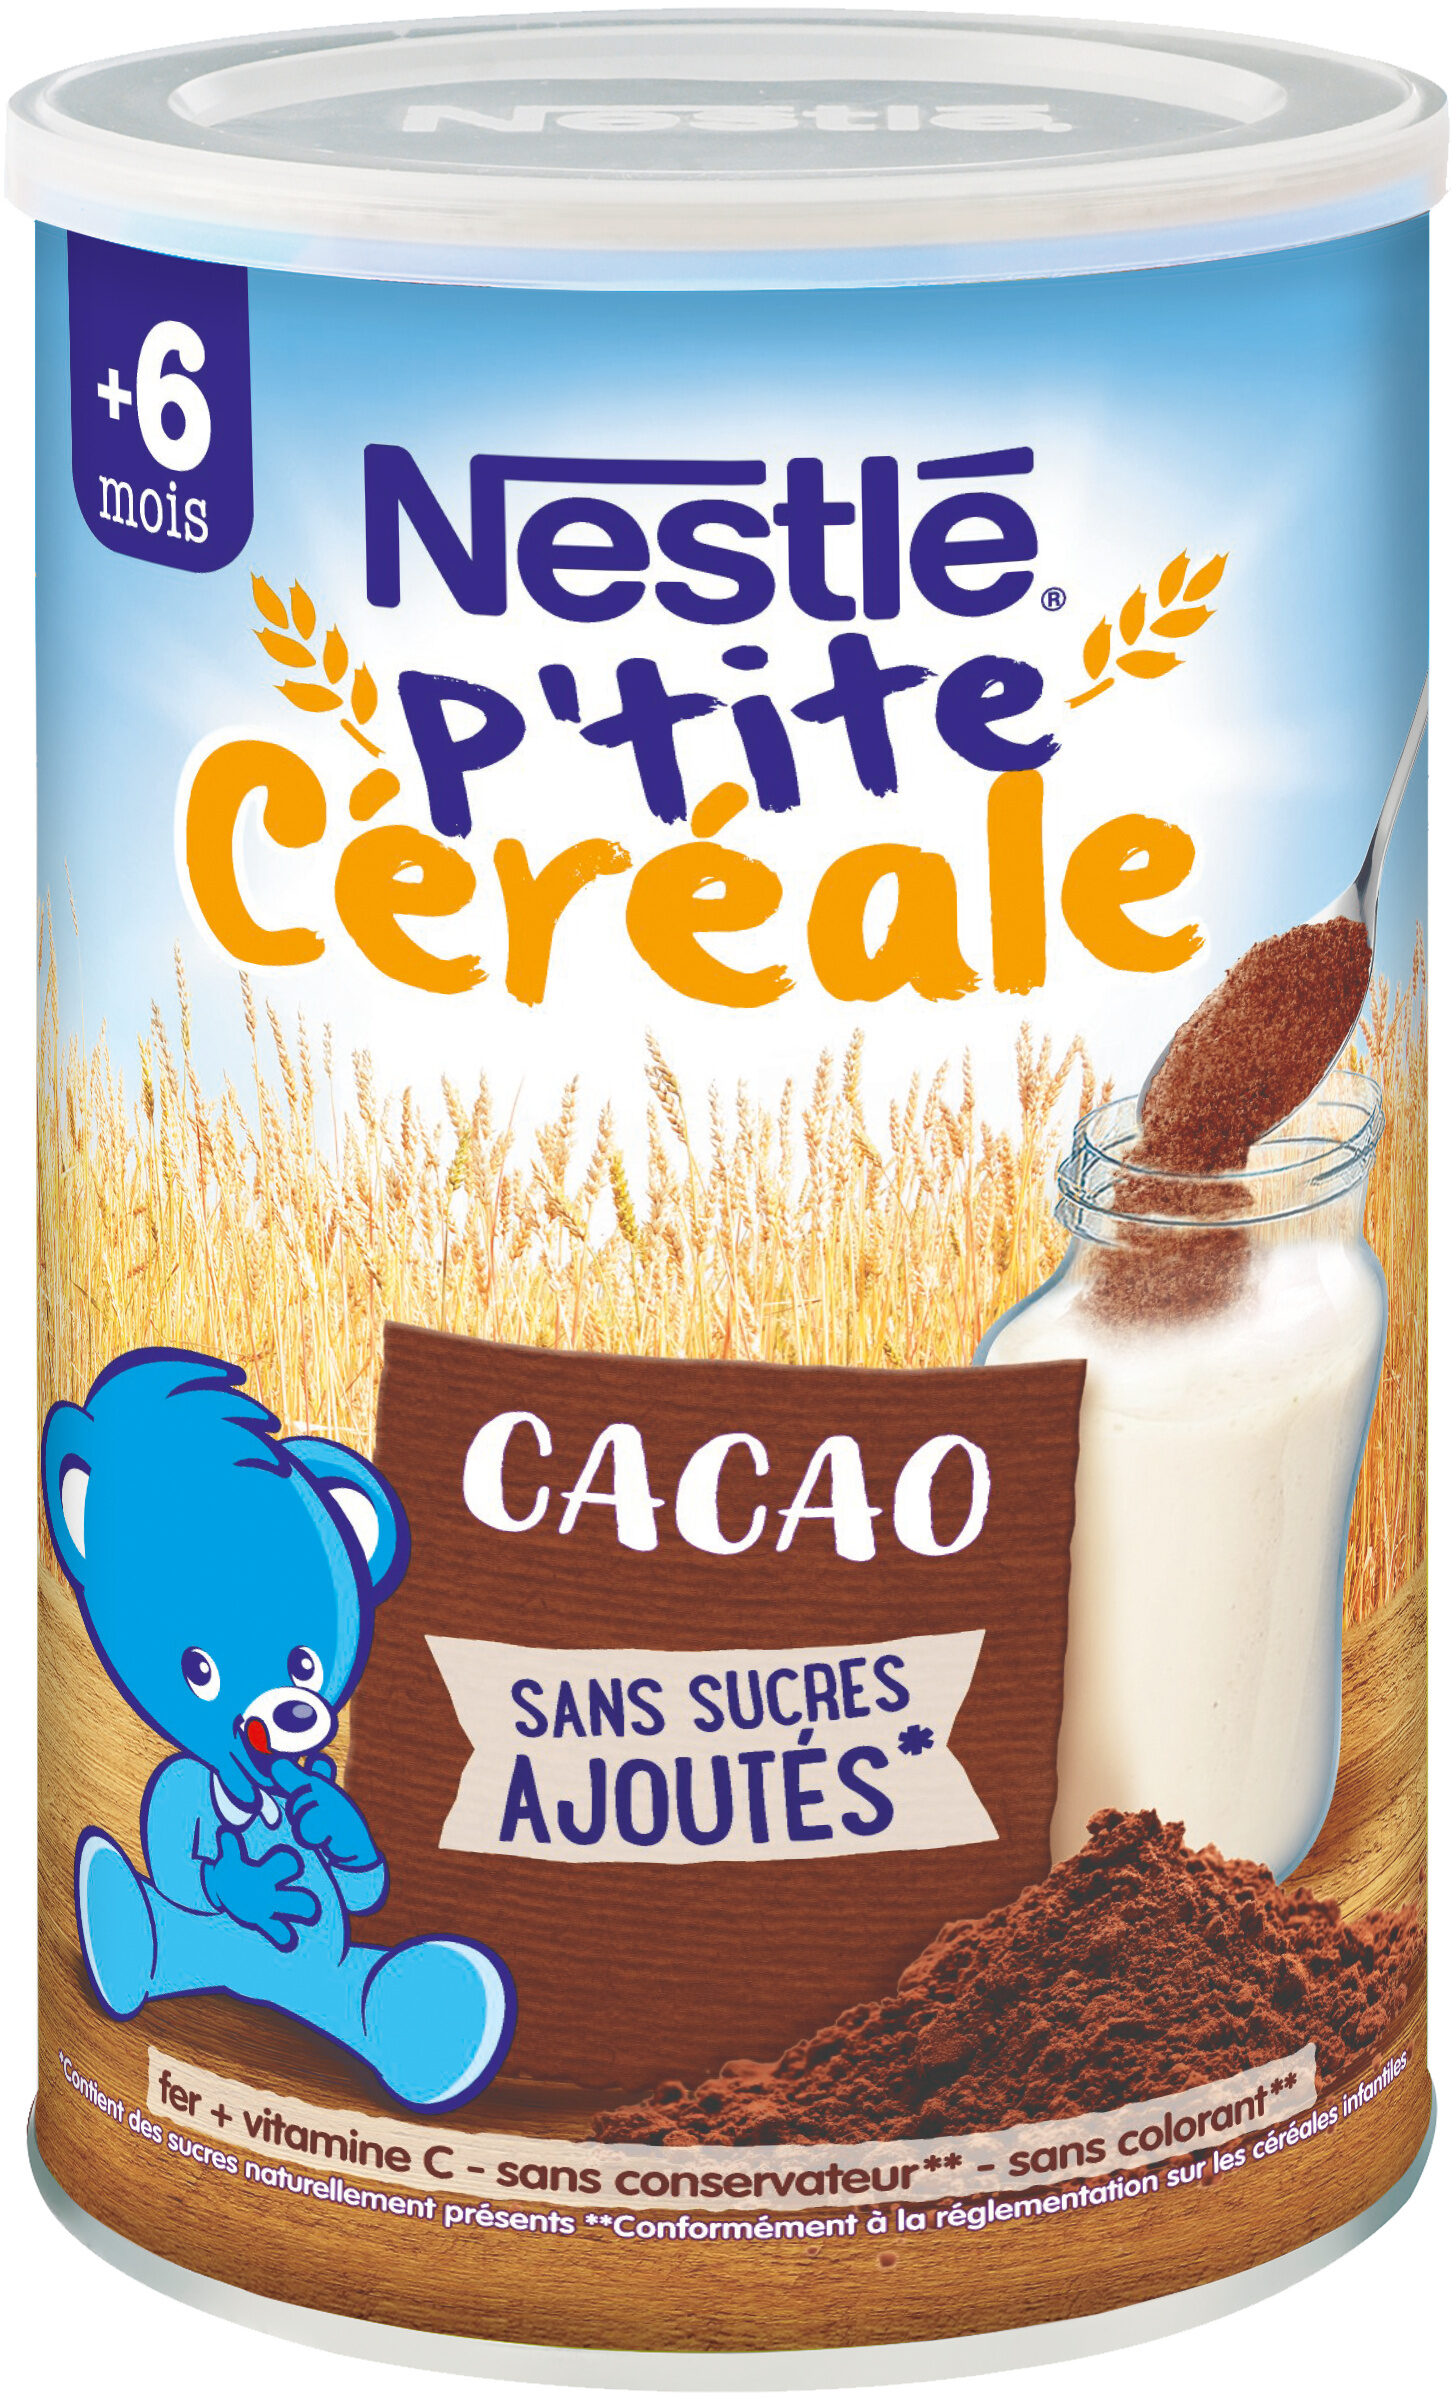 NESTLE P'TITE CEREALE Cacao - Boîte 400g- Dès 6 mois - Product - fr